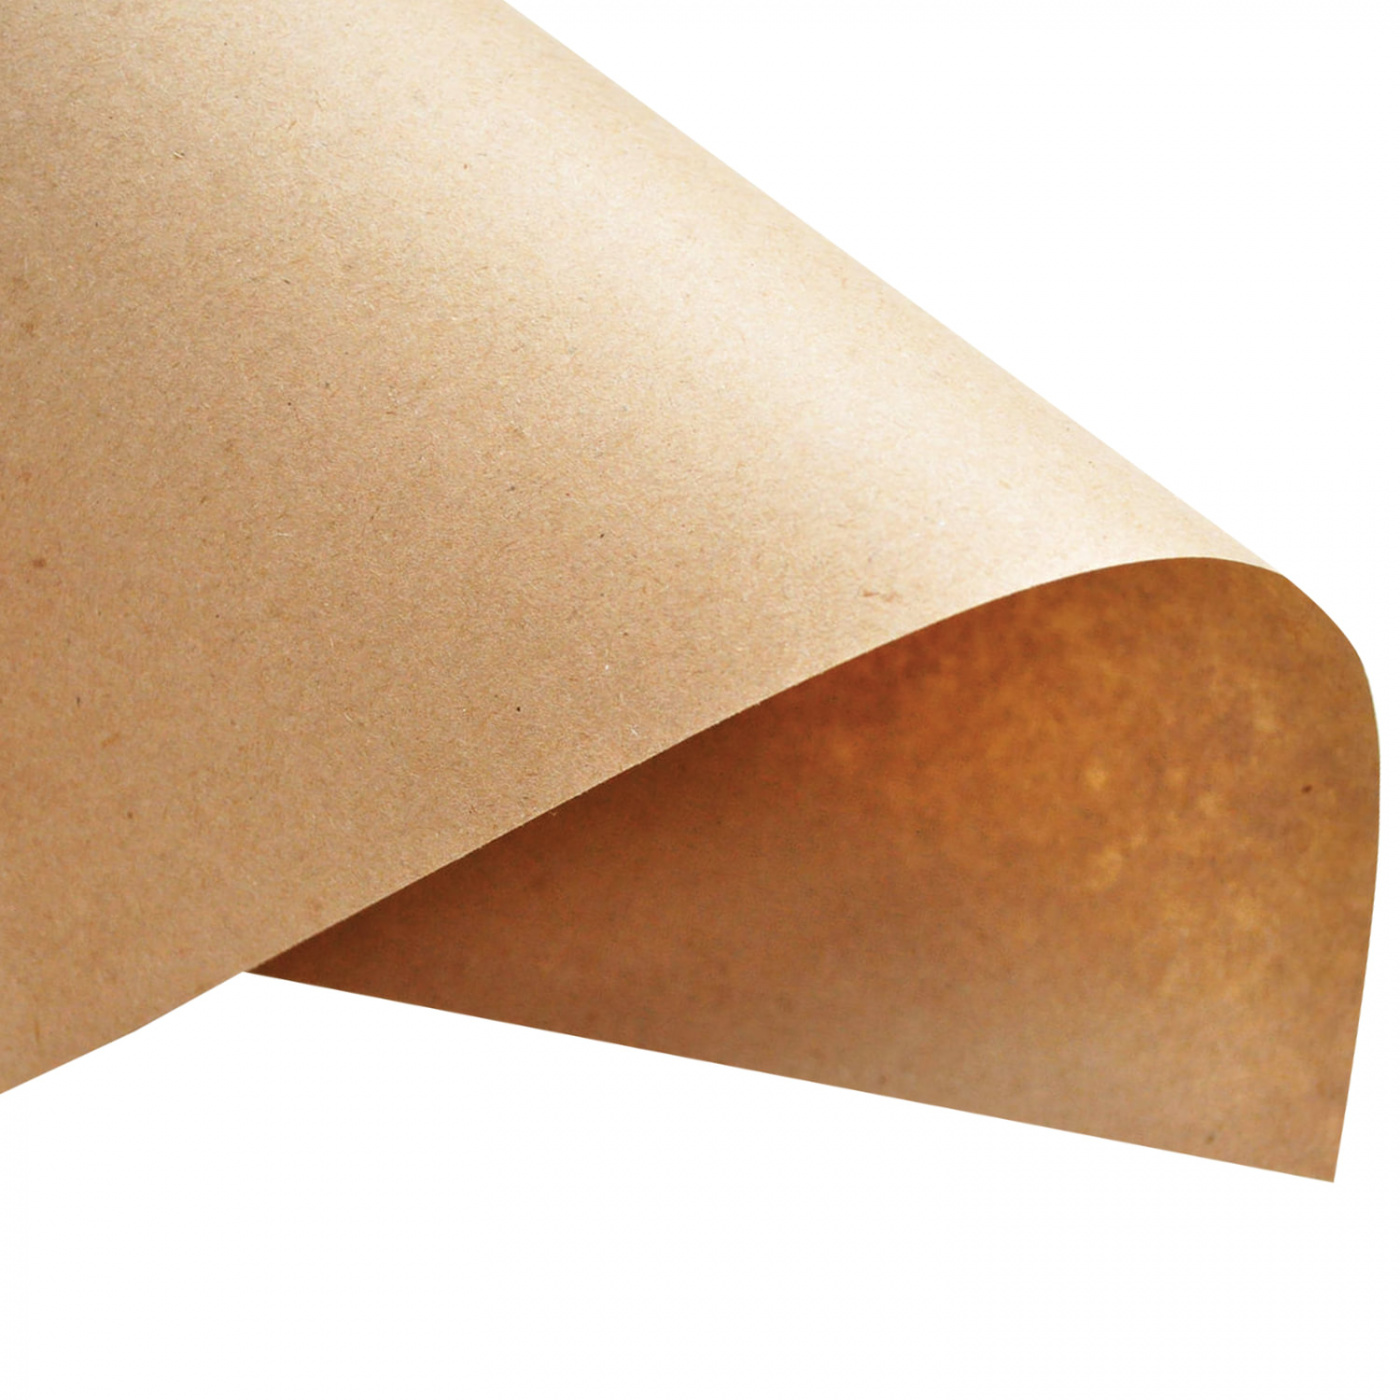 бумага упаковочная крафт двухсторонняя сиреневый мятный 0 6 х 10 м 70 гр м² Бумага Крафт 